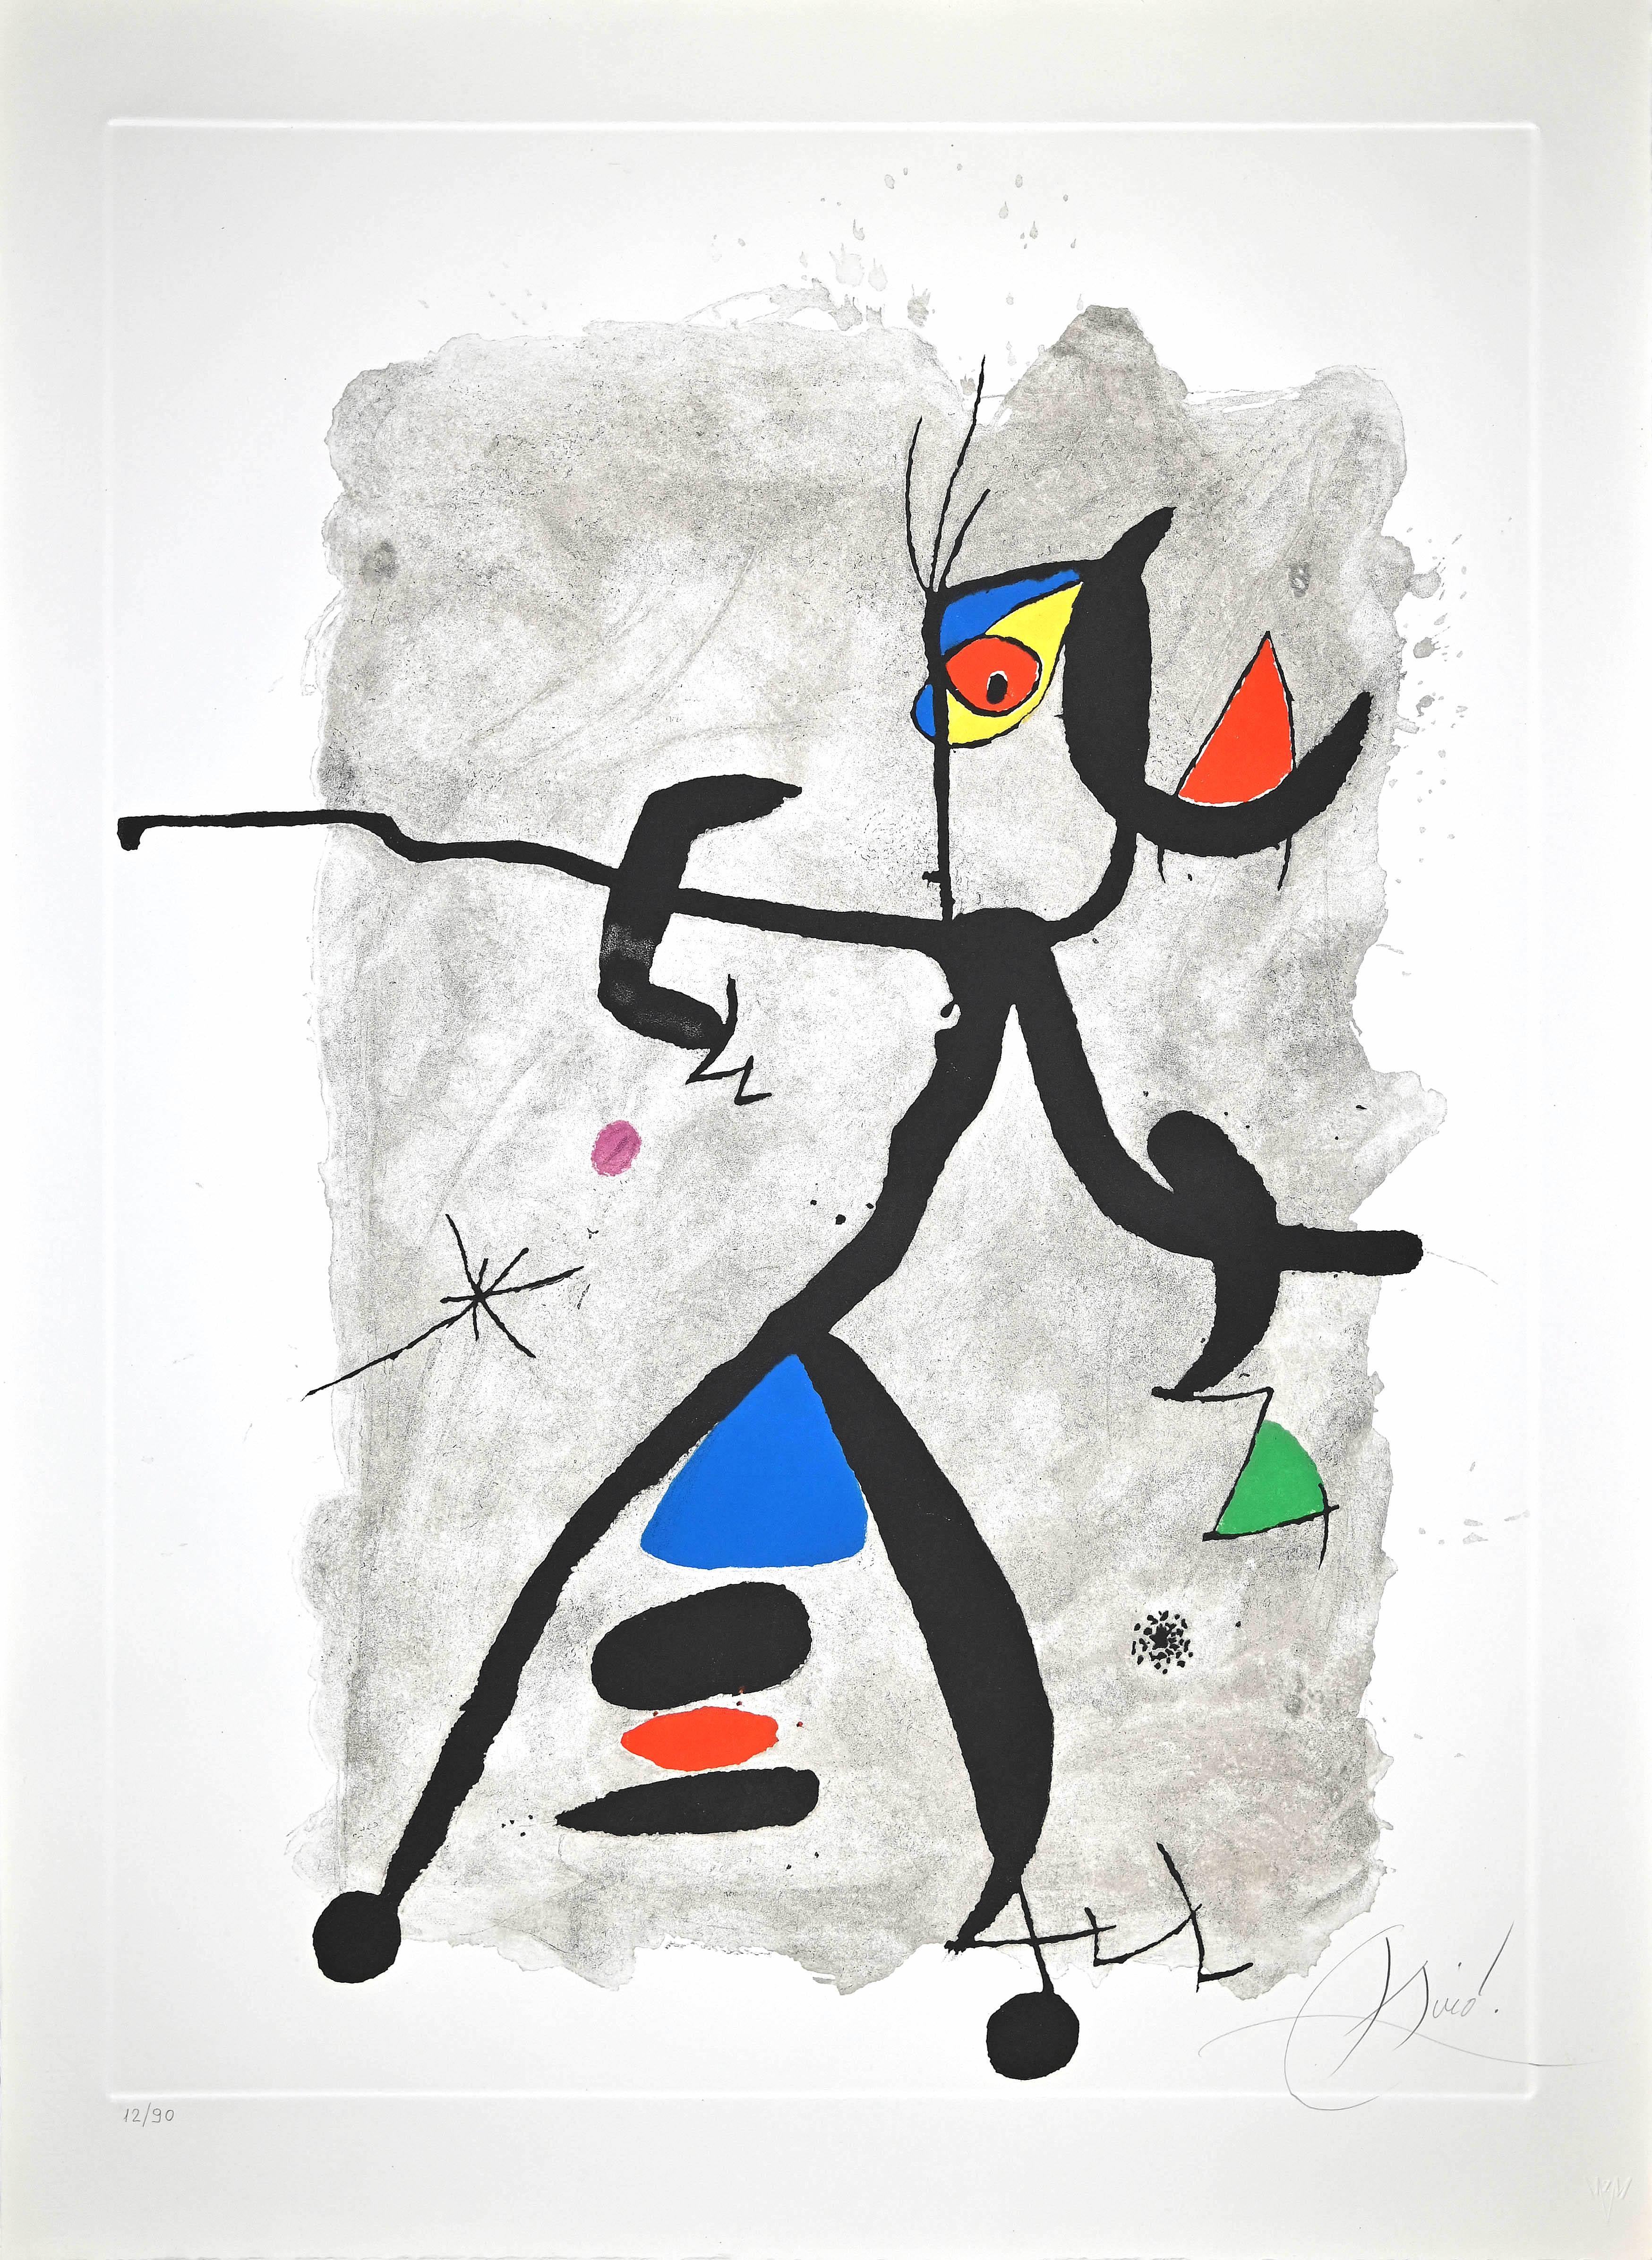 Joan Miró Abstract Print - Per Alberti, per La Spagna (For Alberti, For Spain) 